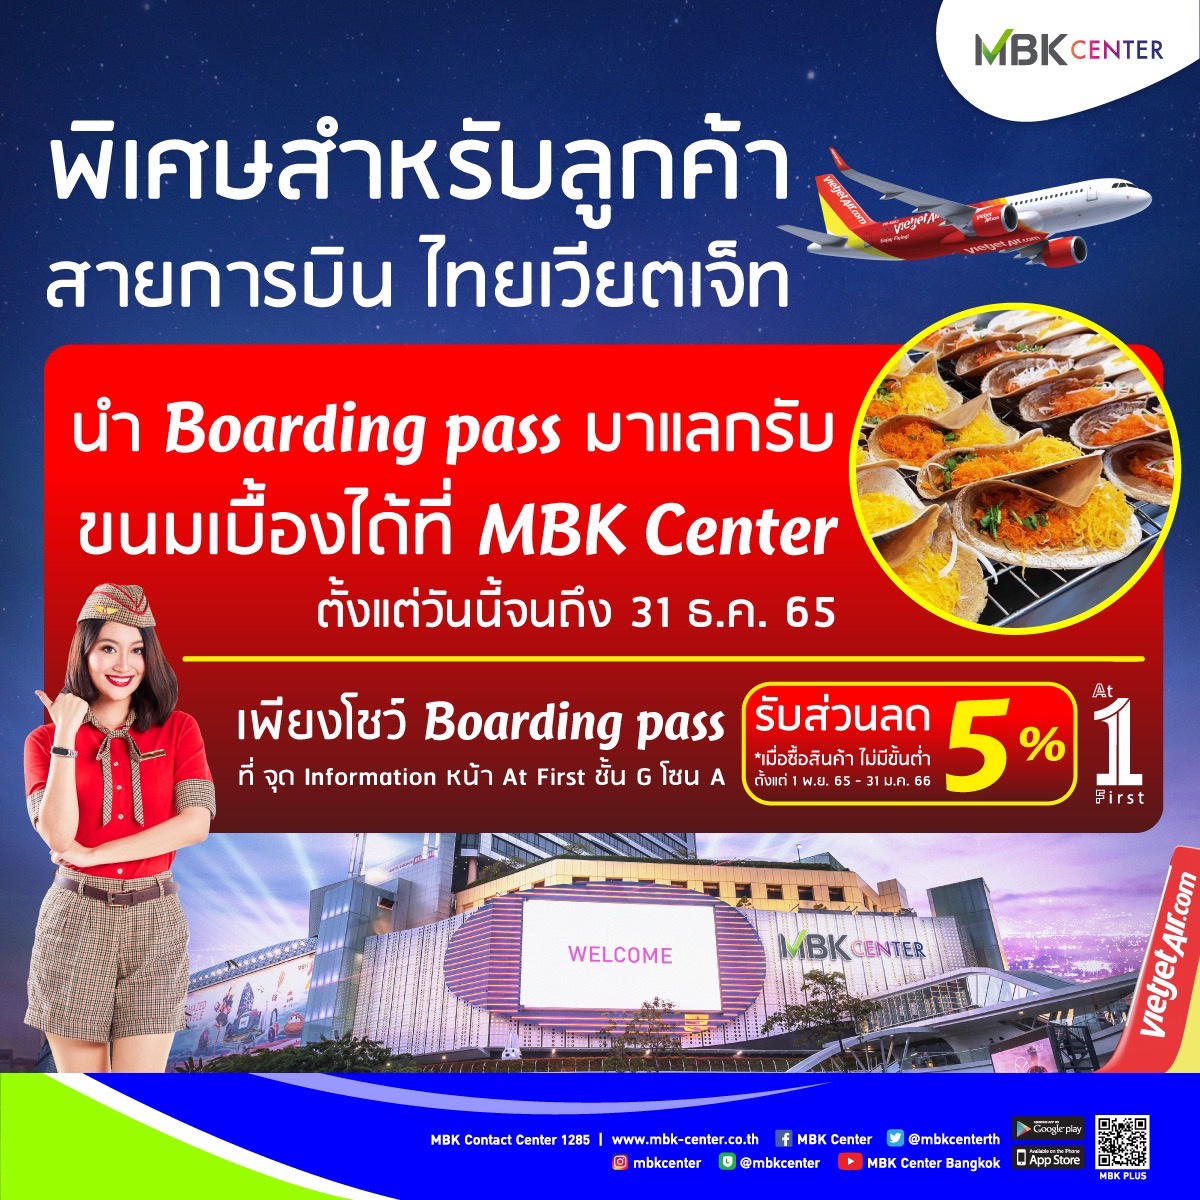 เอ็ม บี เค เซ็นเตอร์ จับมือ สายการบินไทยเวียตเจ็ท มอบ PRIVILEGE ส่งเสริมการท่องเที่ยวไทย